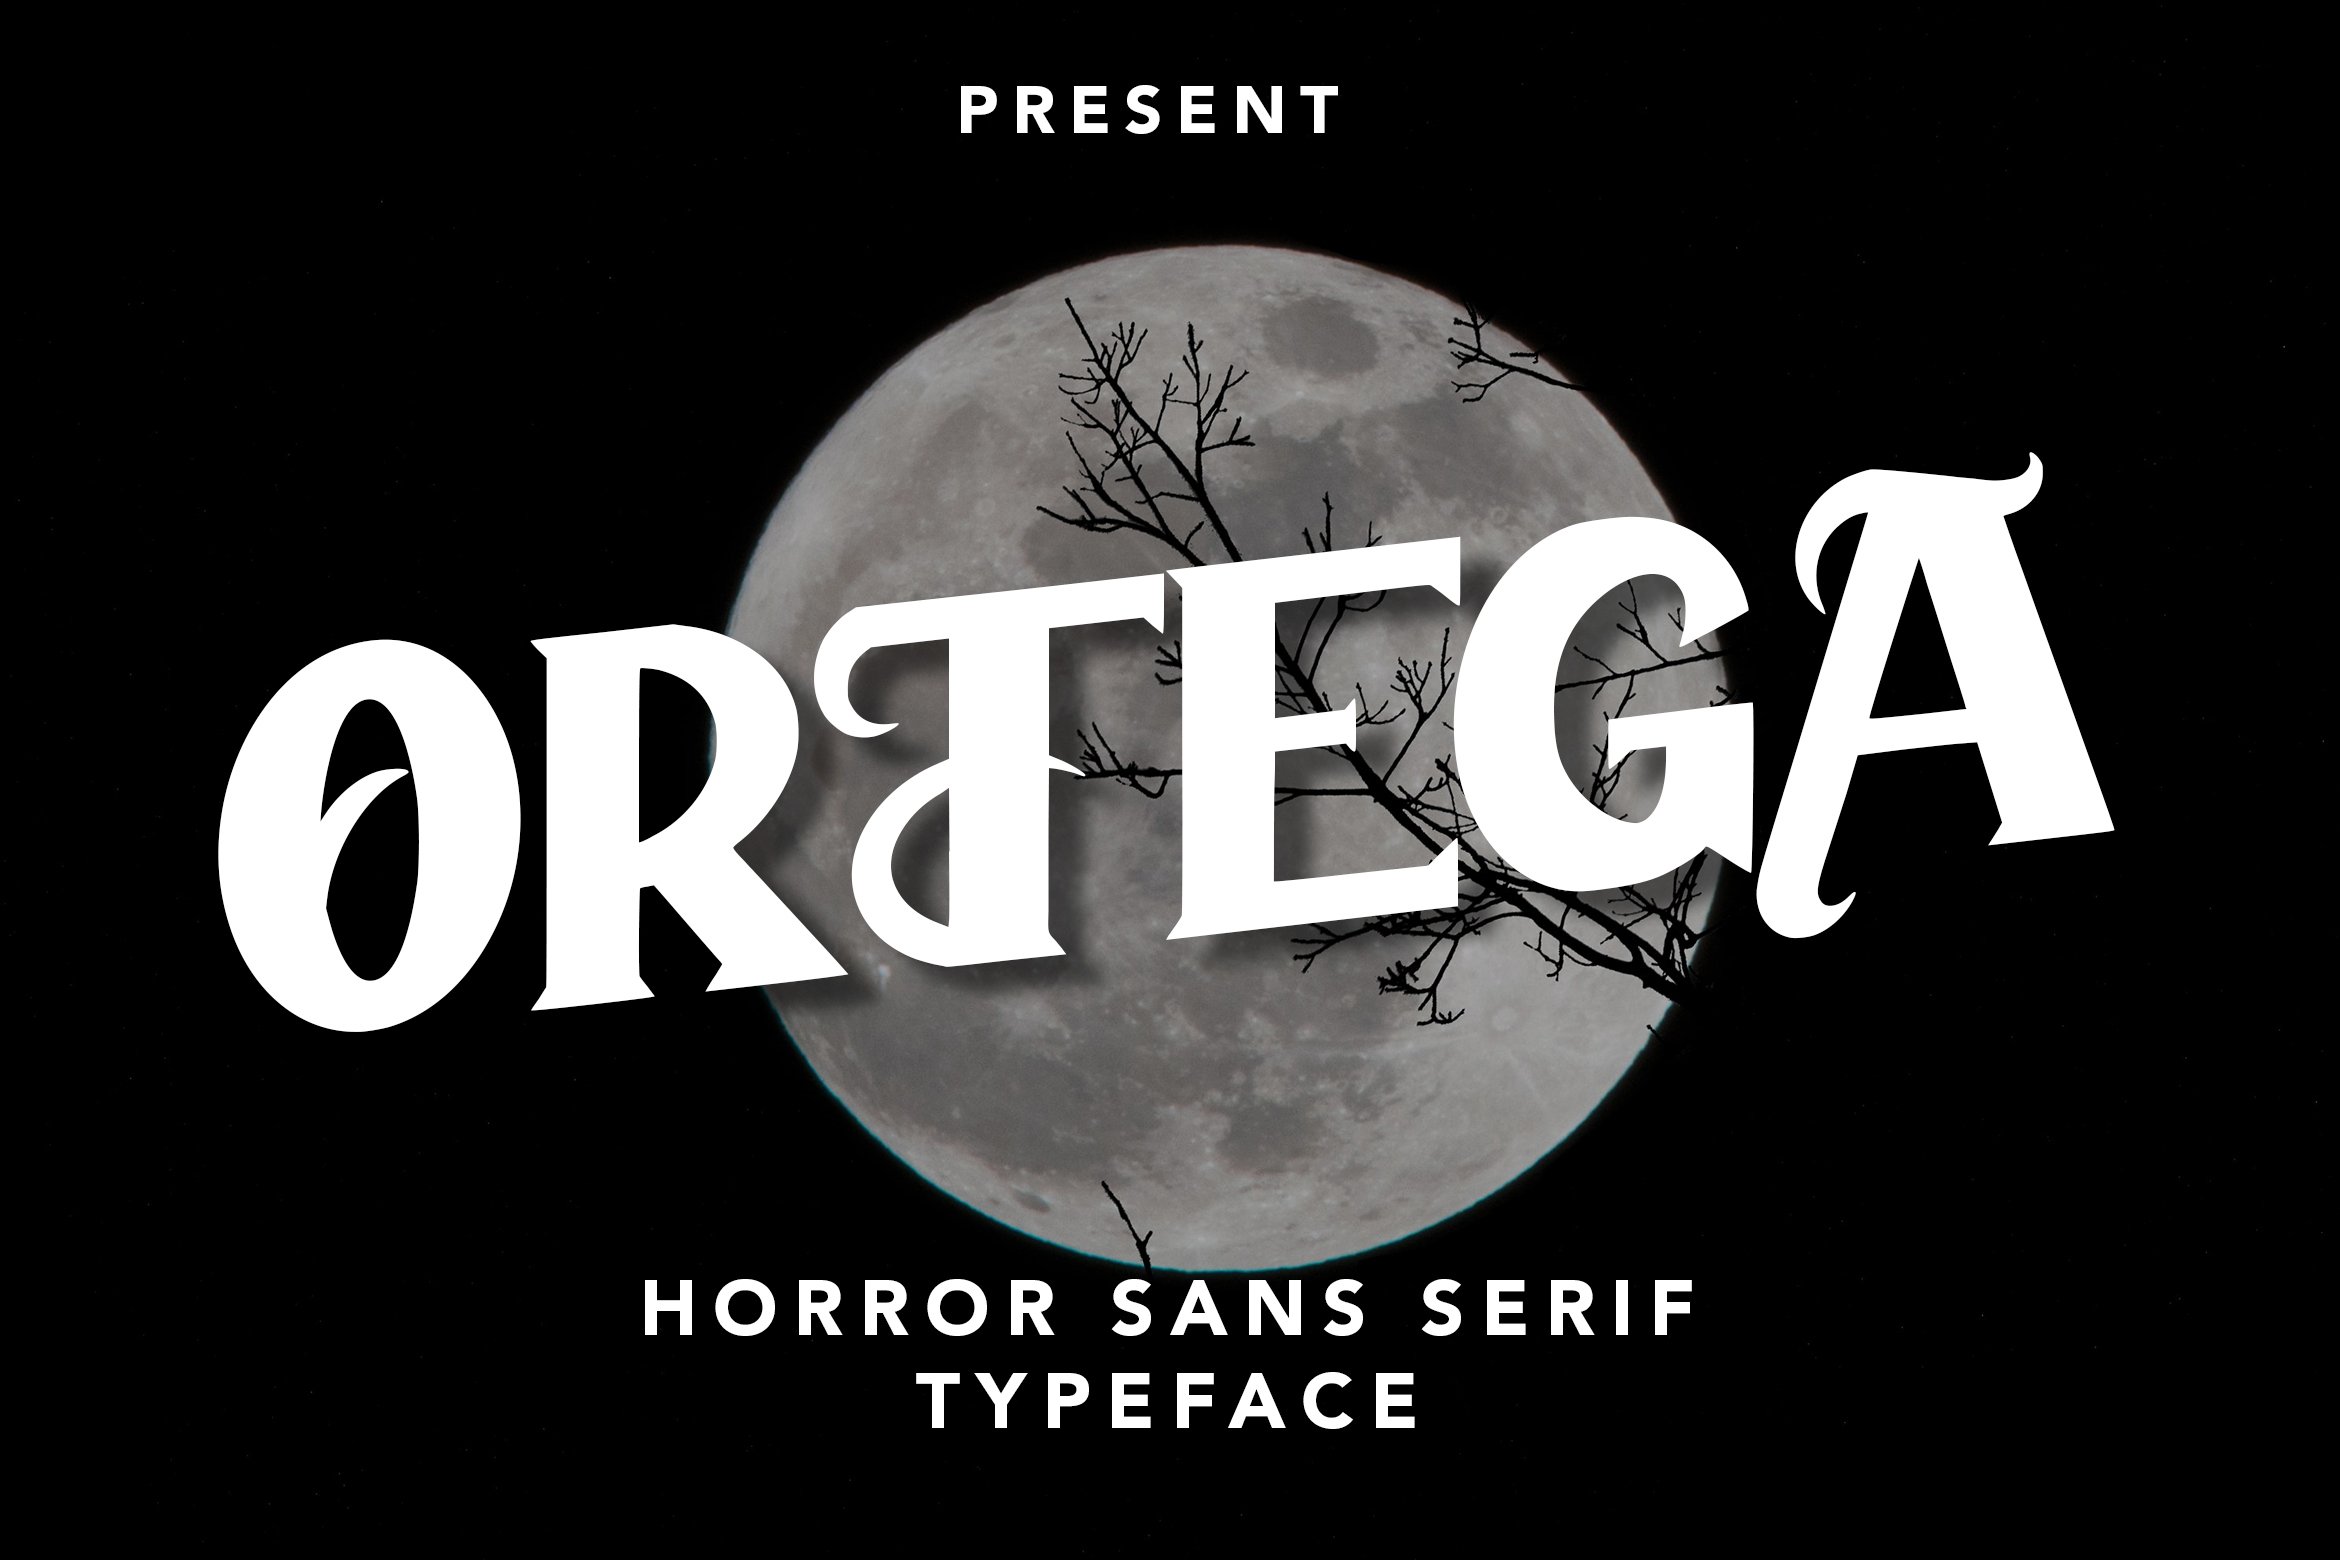 Ortega - Horror Sans Serif Typeface cover image.